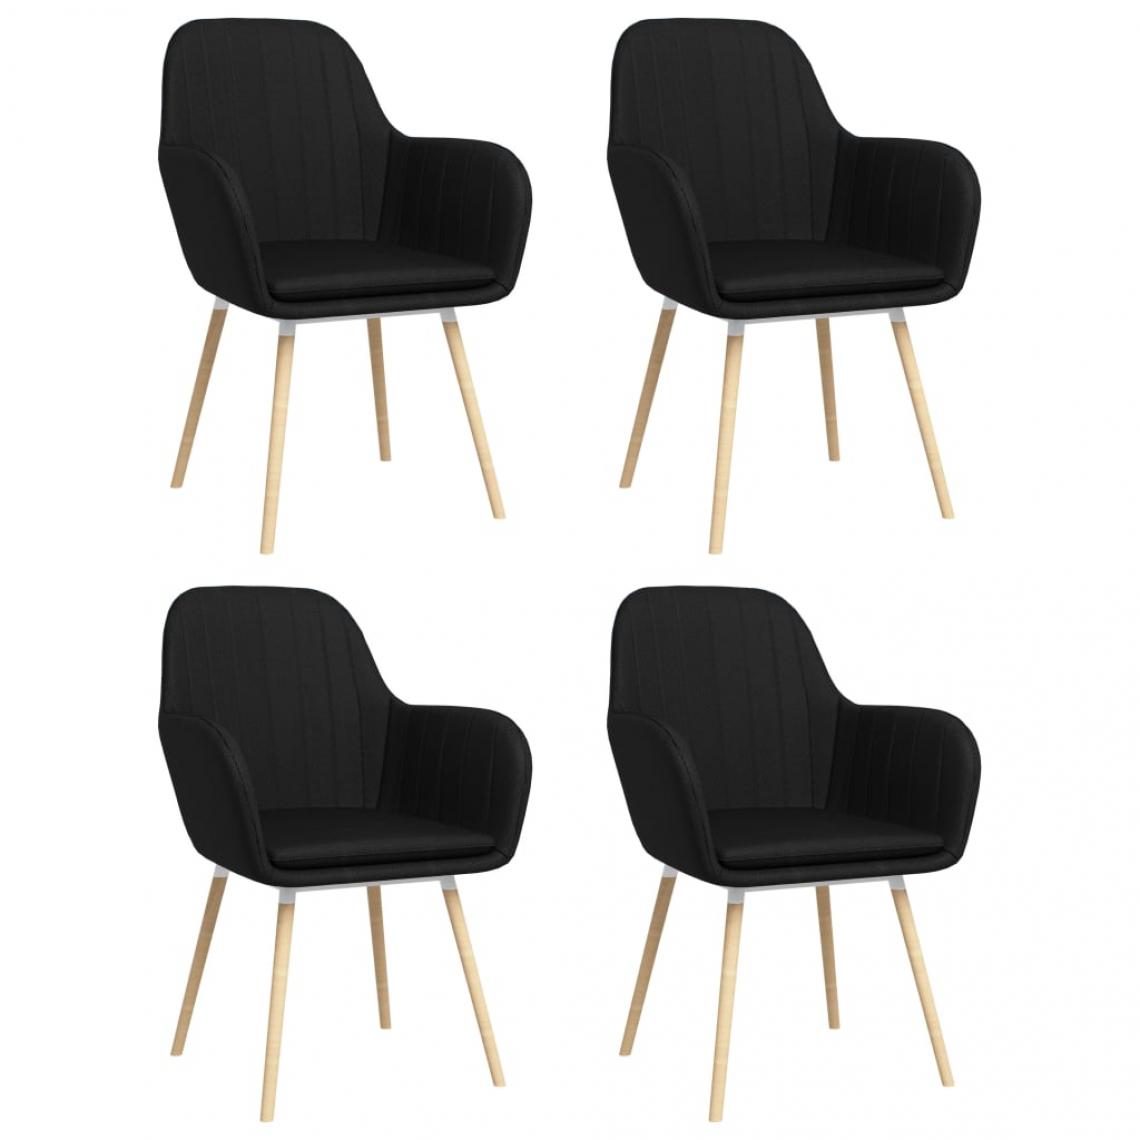 Decoshop26 - Lot de 4 chaises de salle à manger cuisine avec accoudoirs design élégant tissu noir CDS021212 - Chaises